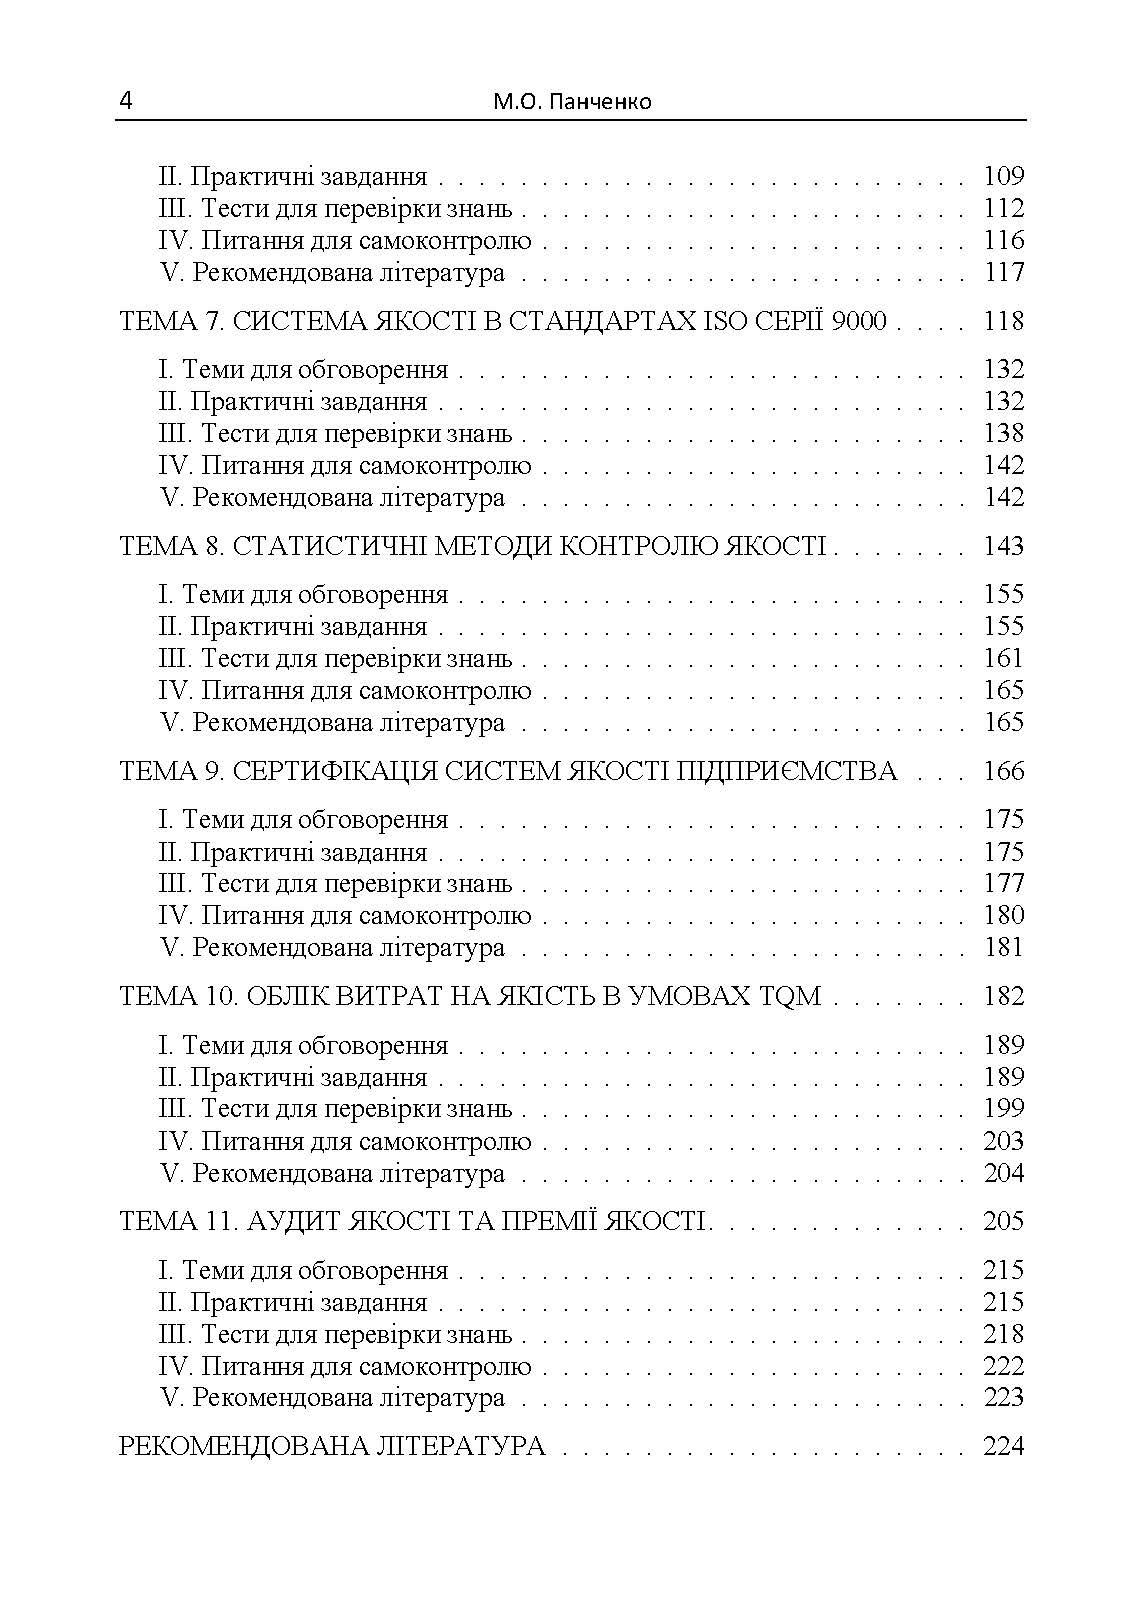 Управління якістю: теорія та практика: навчальний посібник. Автор — М. О. Панченко. 